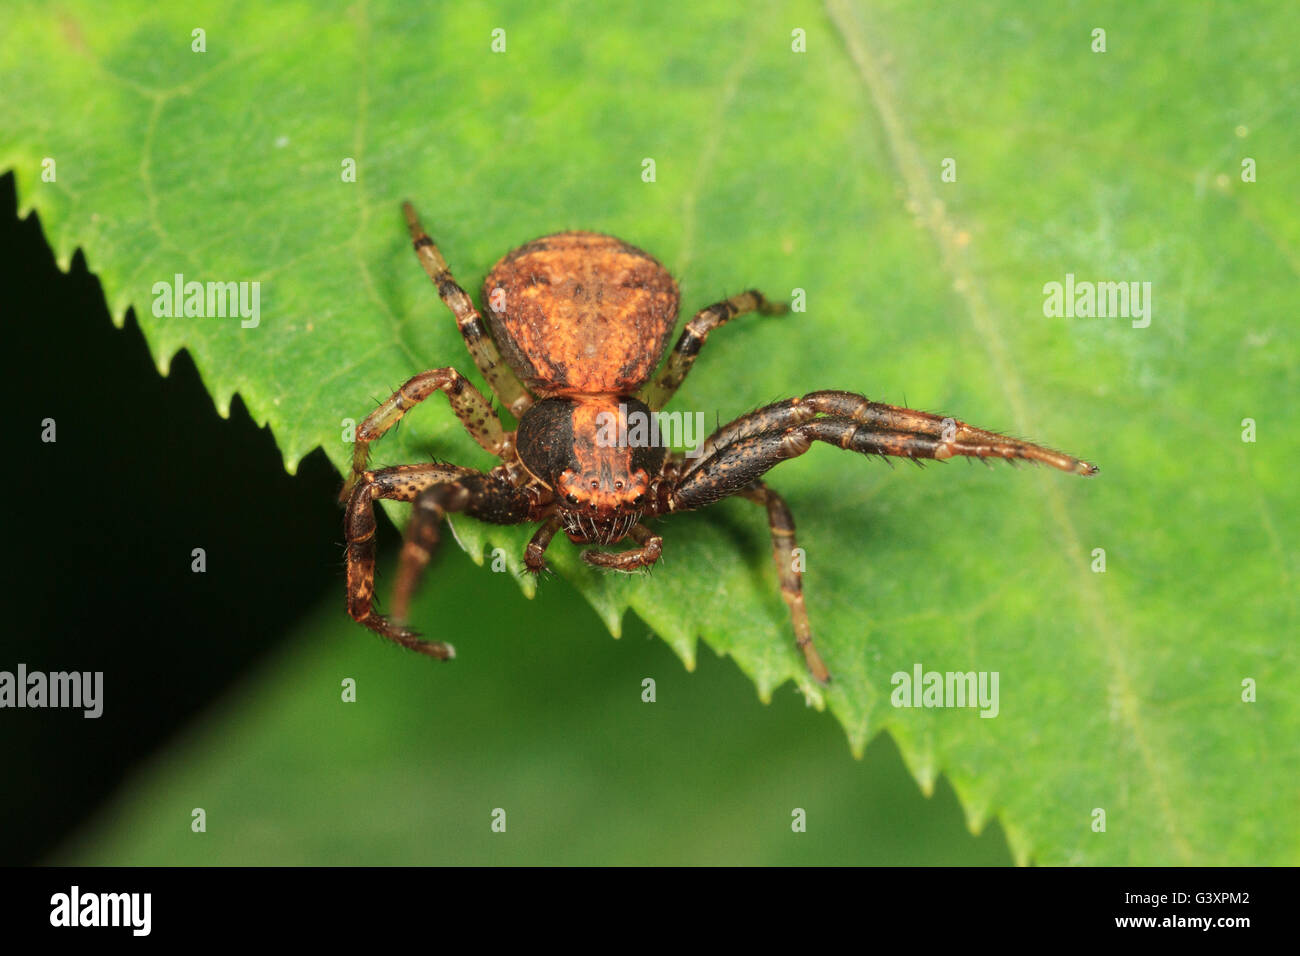 Crabe araignée (Xysticus sol sp.) sur feuille, menace l'affichage. Banque D'Images